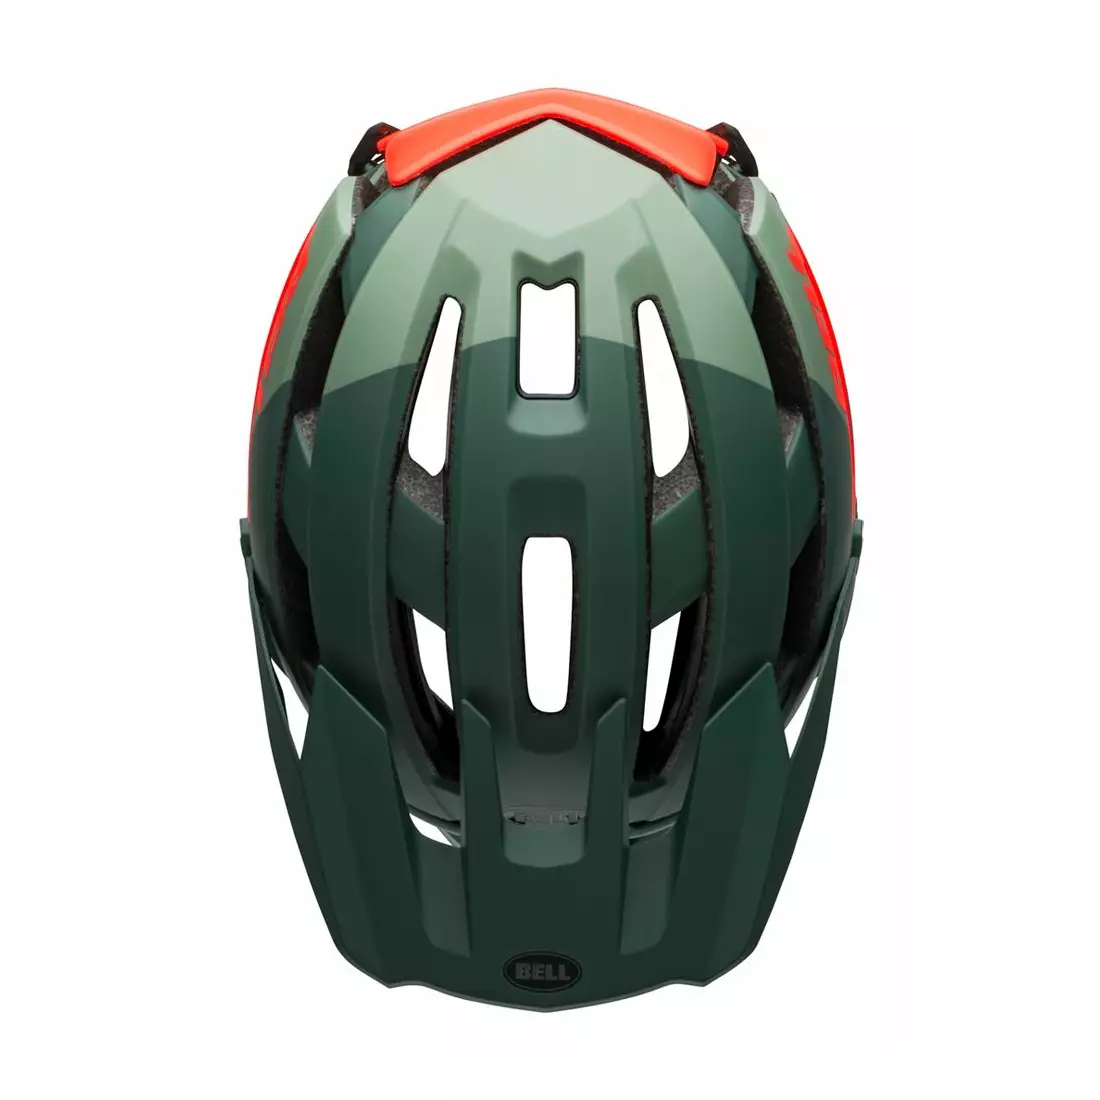 BELL SUPER AIR R MIPS SPHERICAL cască integrală pentru bicicletă, matte gloss green infrared